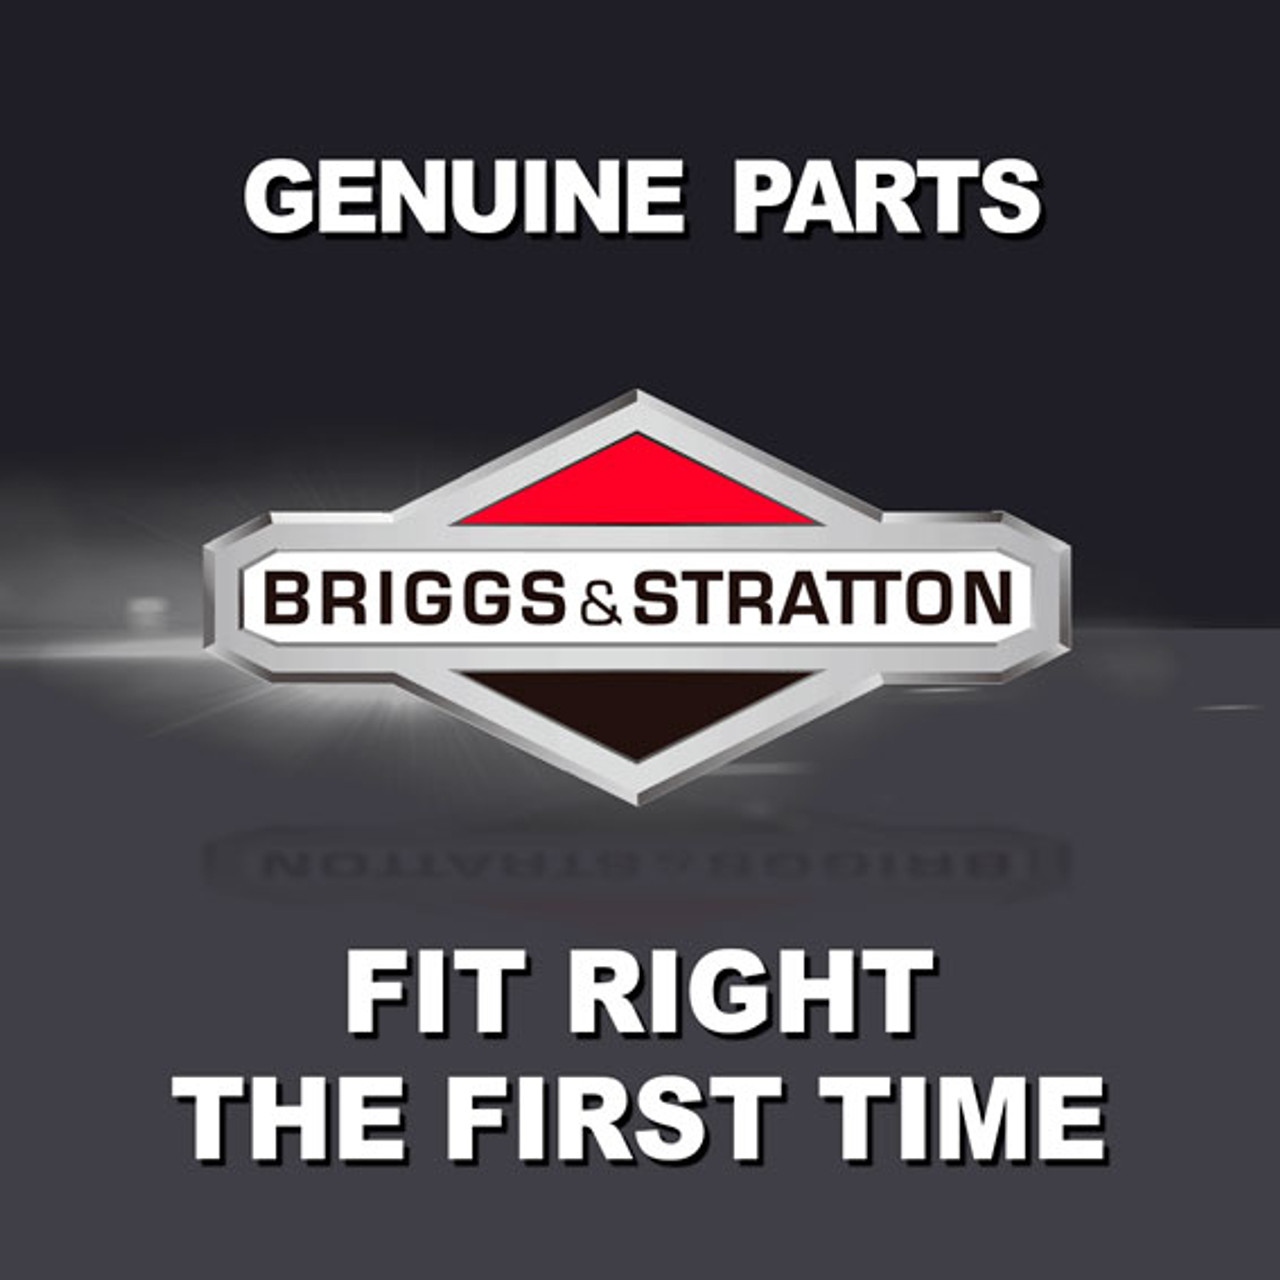 BRIGGS & STRATTON CUP-FLYWHEEL 710276 - Image 1